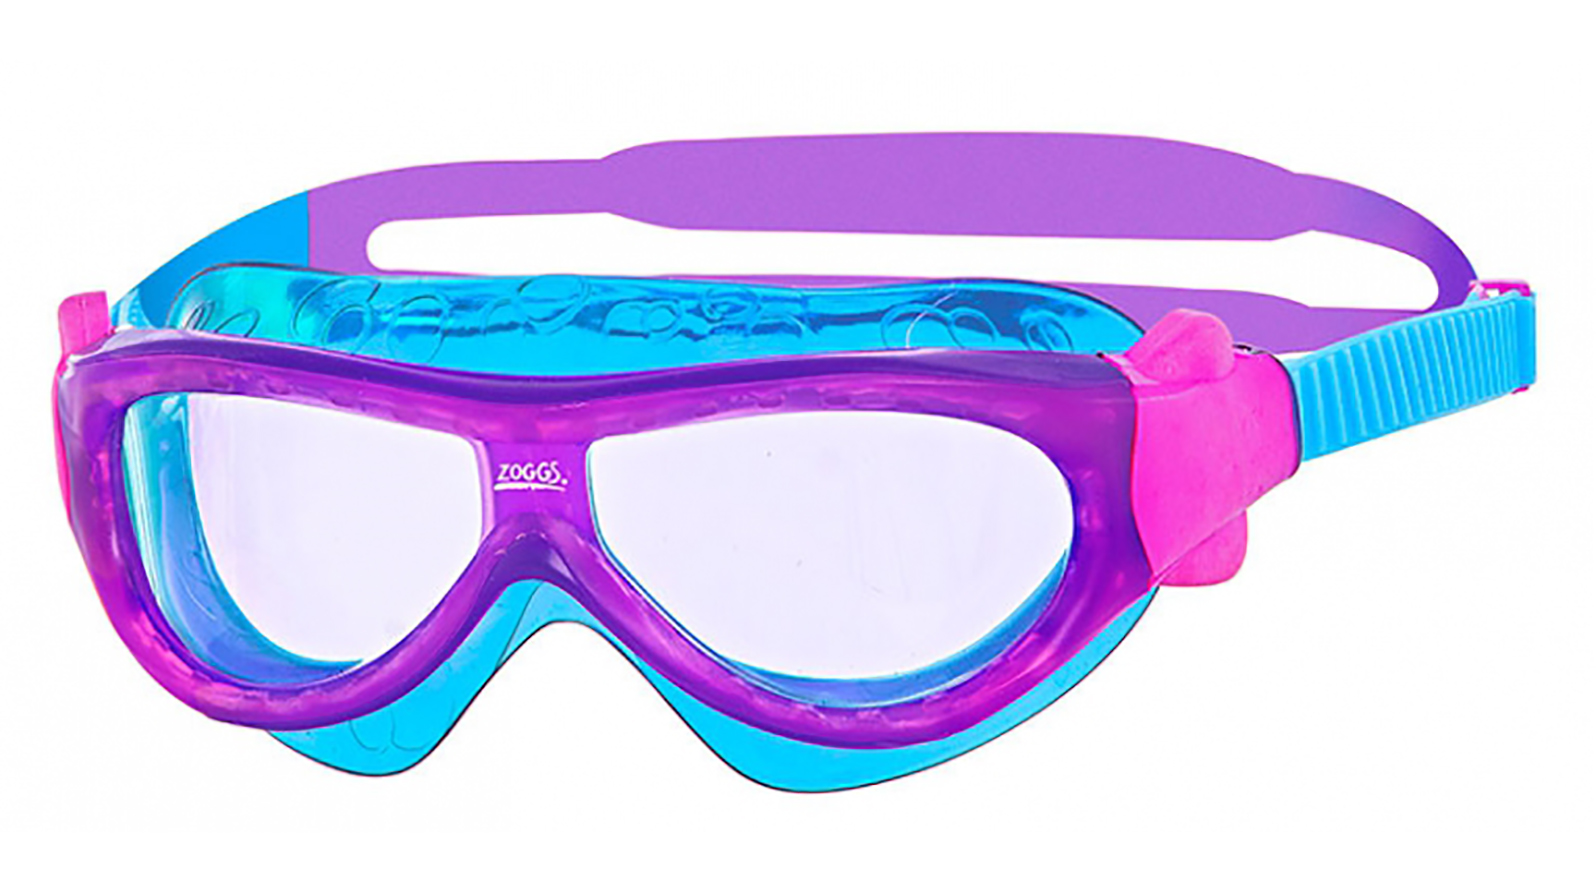 ZOGGS Очки-маска для плавания Phantom Kids (фиолетовый/голубой) zoggs очки маска для плавания phantom kids красный голубой